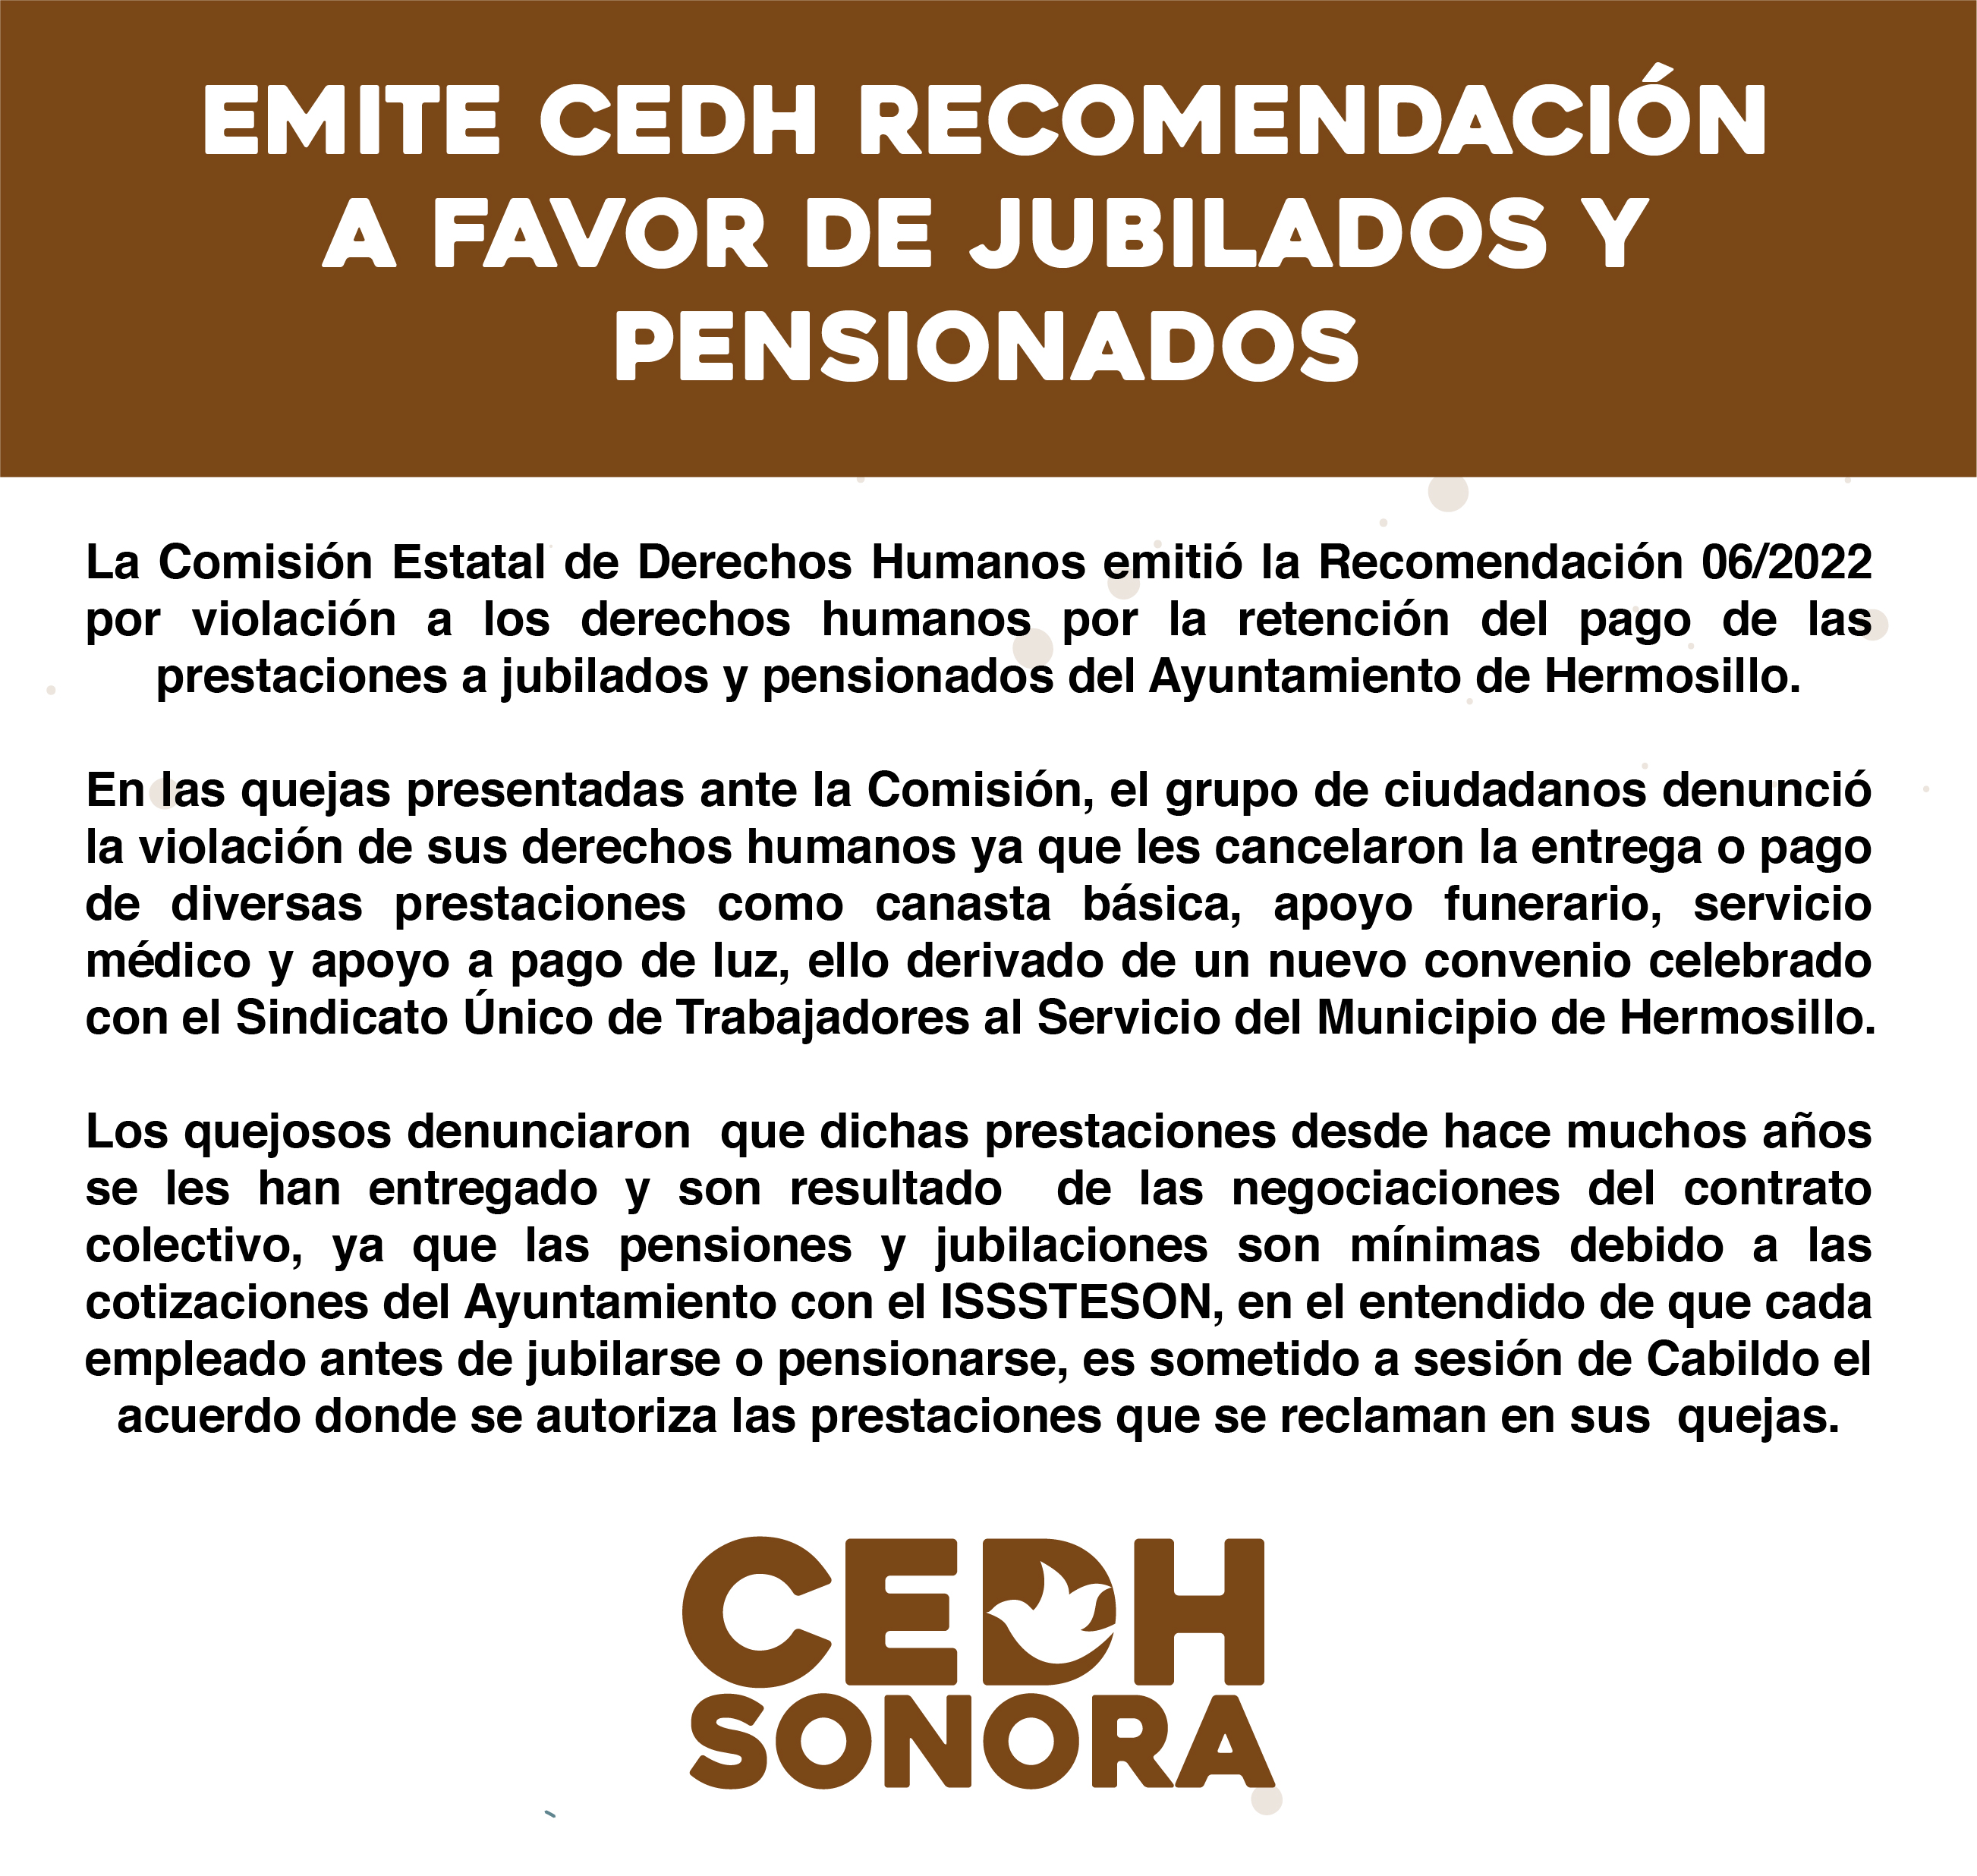 Emite CEDH Recomendación a favor de jubilados y pensionados